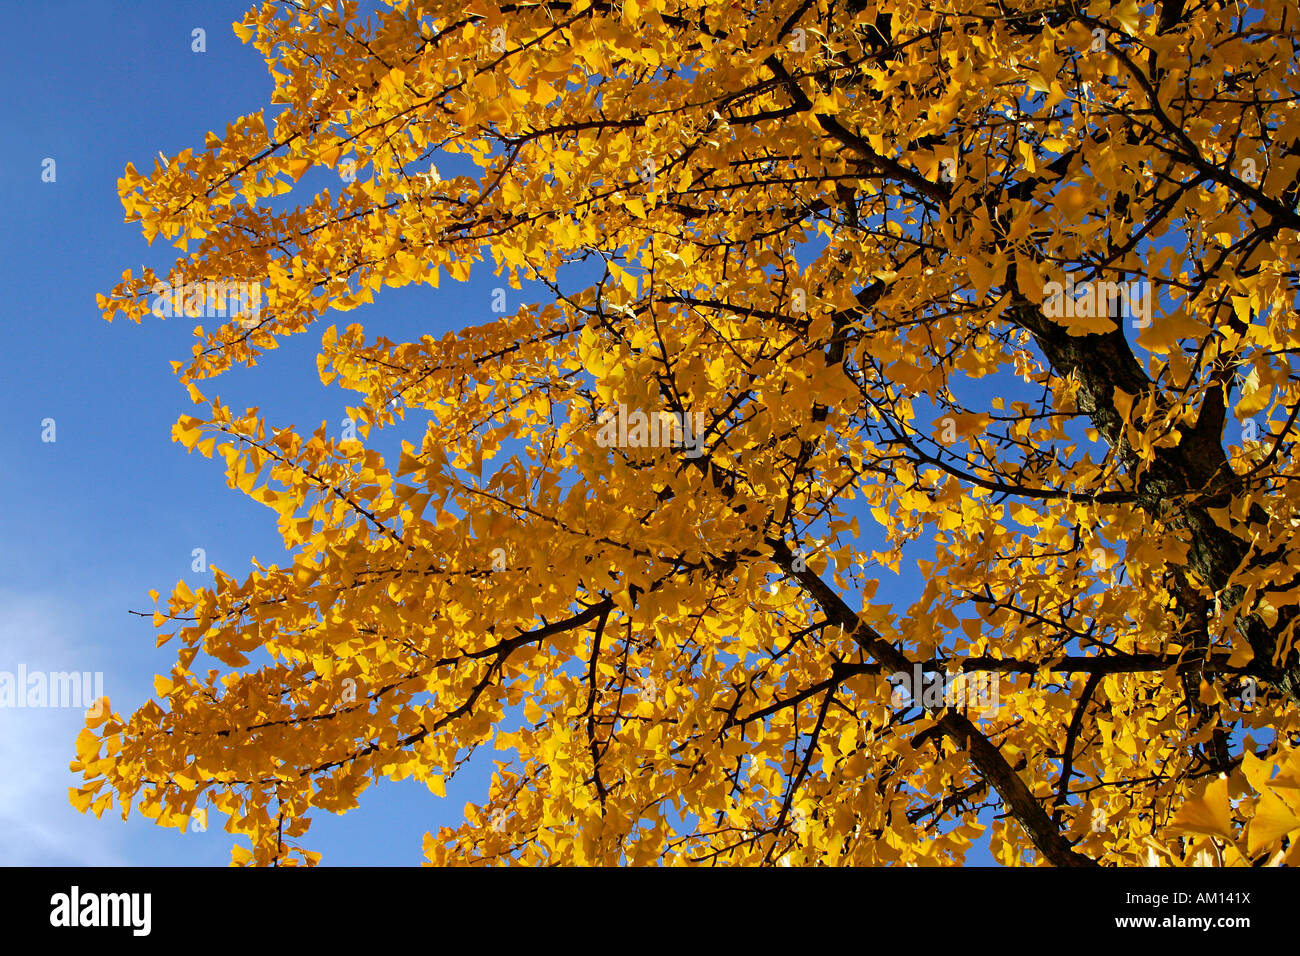 Ginkgo-Baum-tausend Baum - Blätter im Herbst Farben - gelb Laub (Ginkgo Biloba) Stockfoto